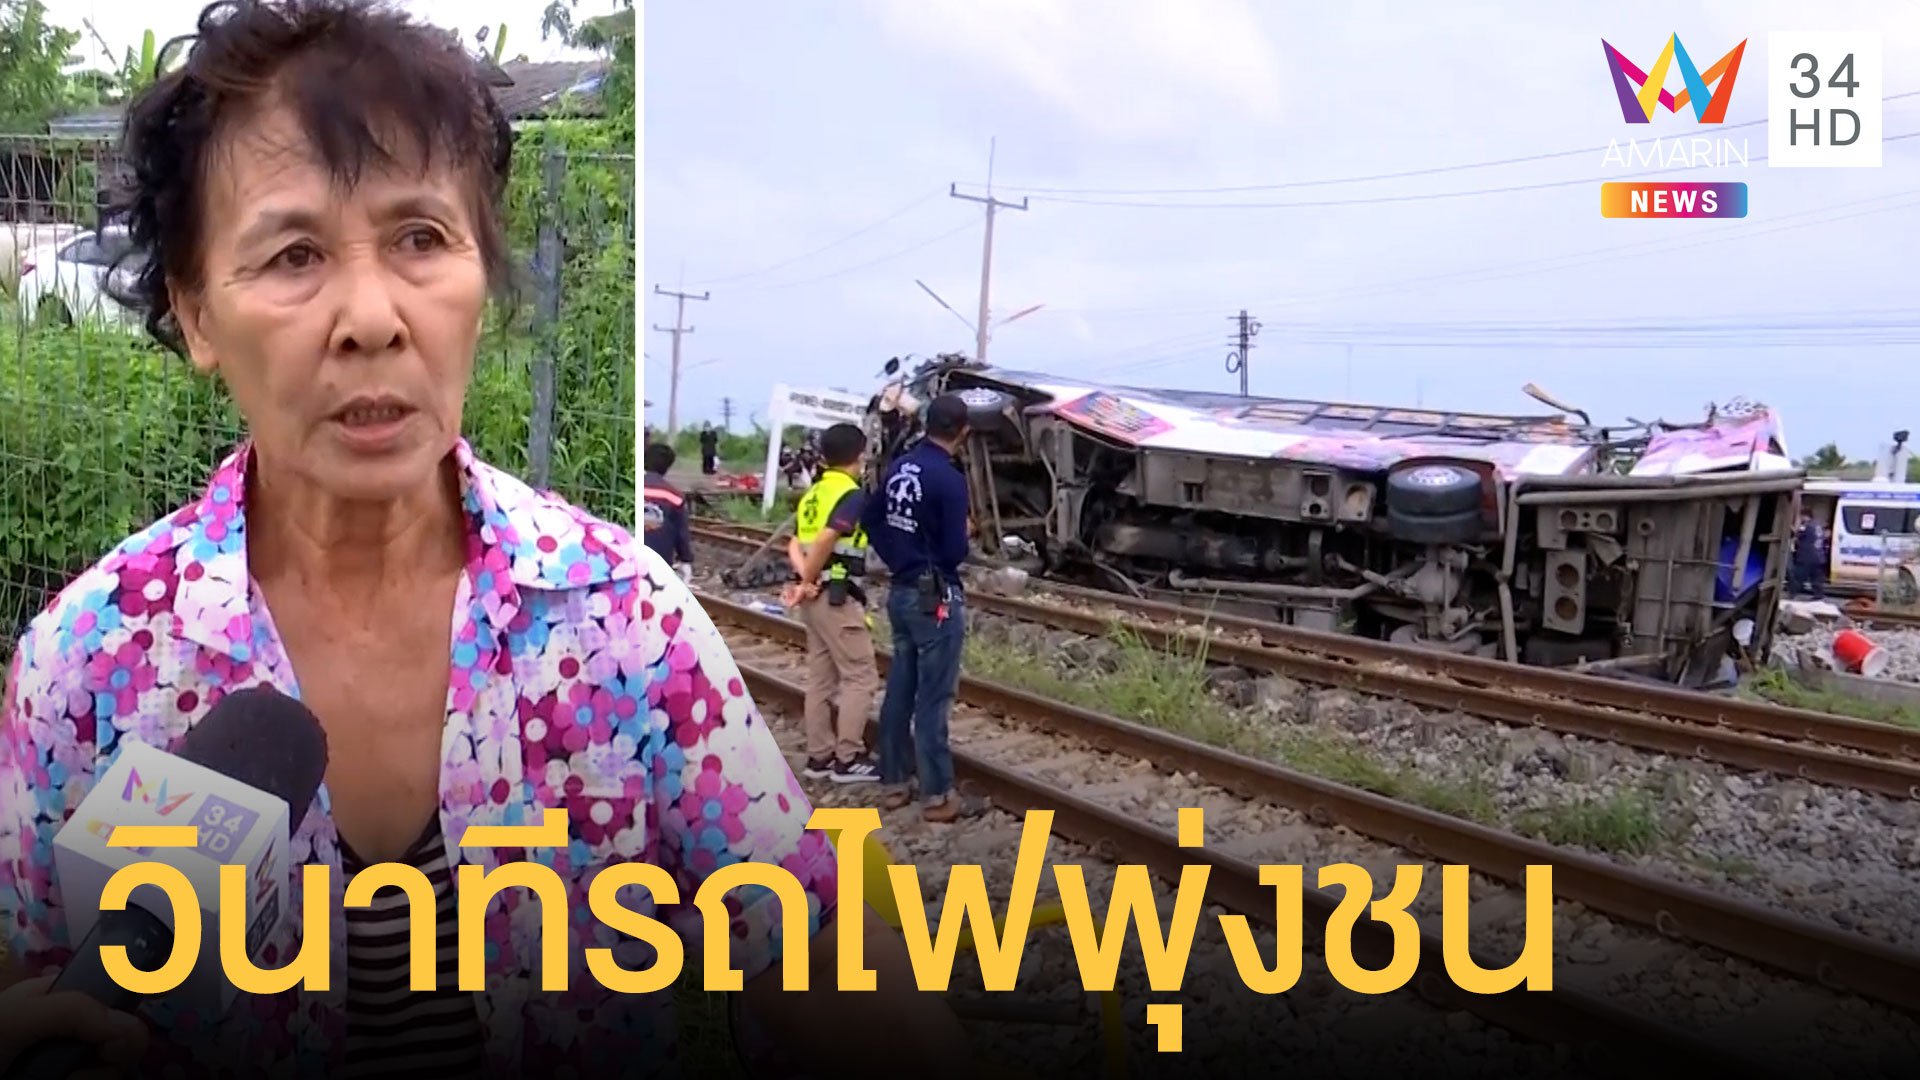 รถบัสทอดกฐินถูกรถไฟชนกลางคัน เสียชีวิตแล้ว 20 ราย  | ข่าวเที่ยงอมรินทร์ | 11 ต.ค. 63 | AMARIN TVHD34